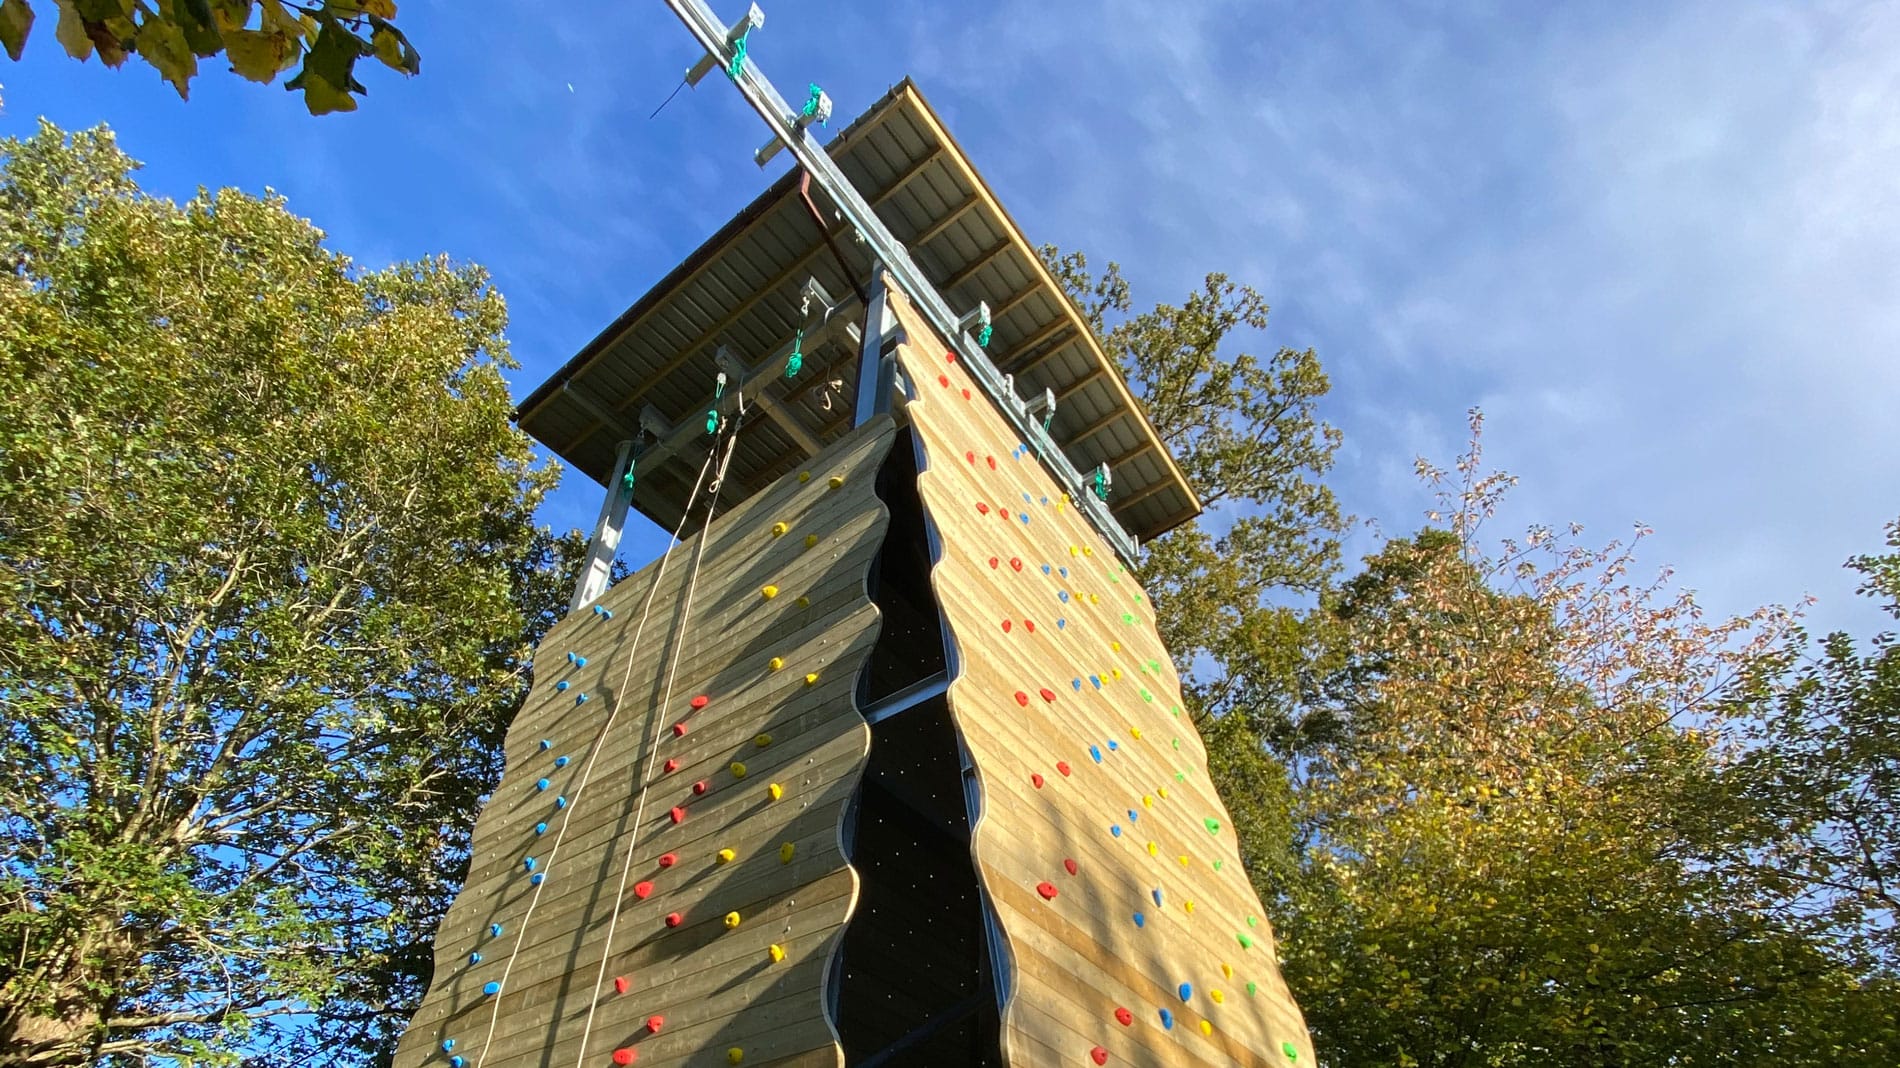 climbing towers design